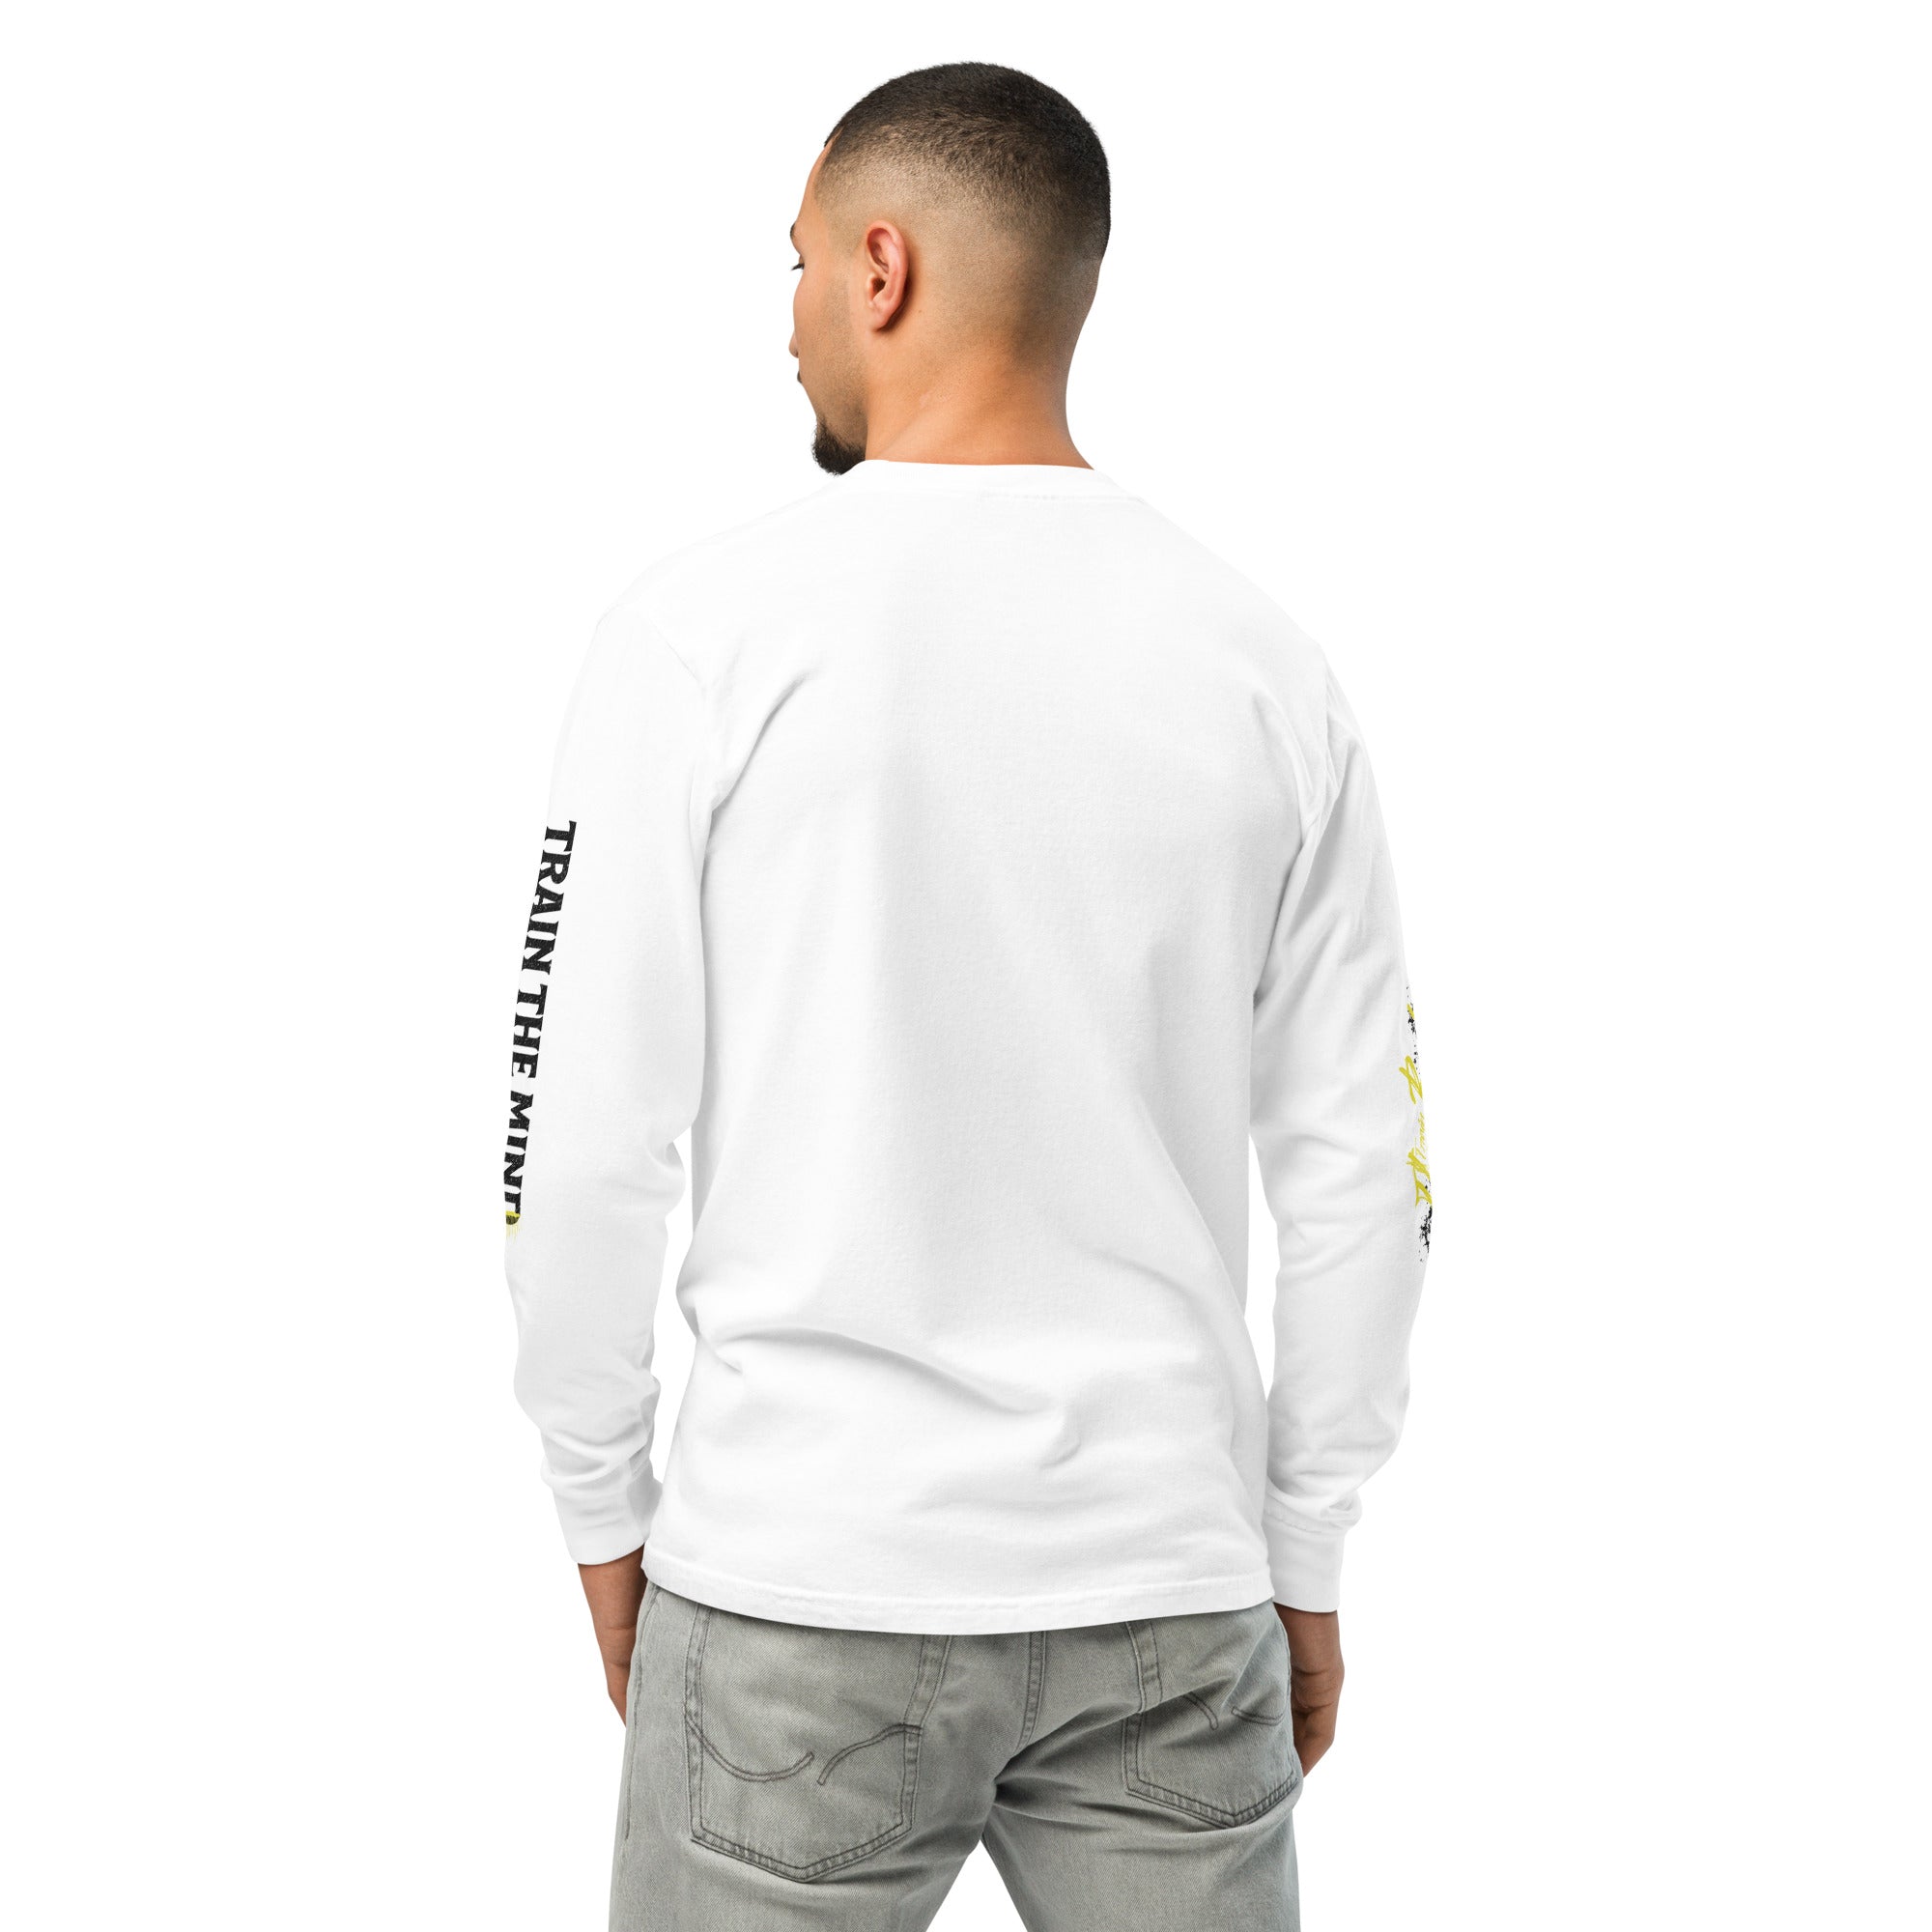 TTBTTM Heavyweight Long-Sleeve Shirt V1